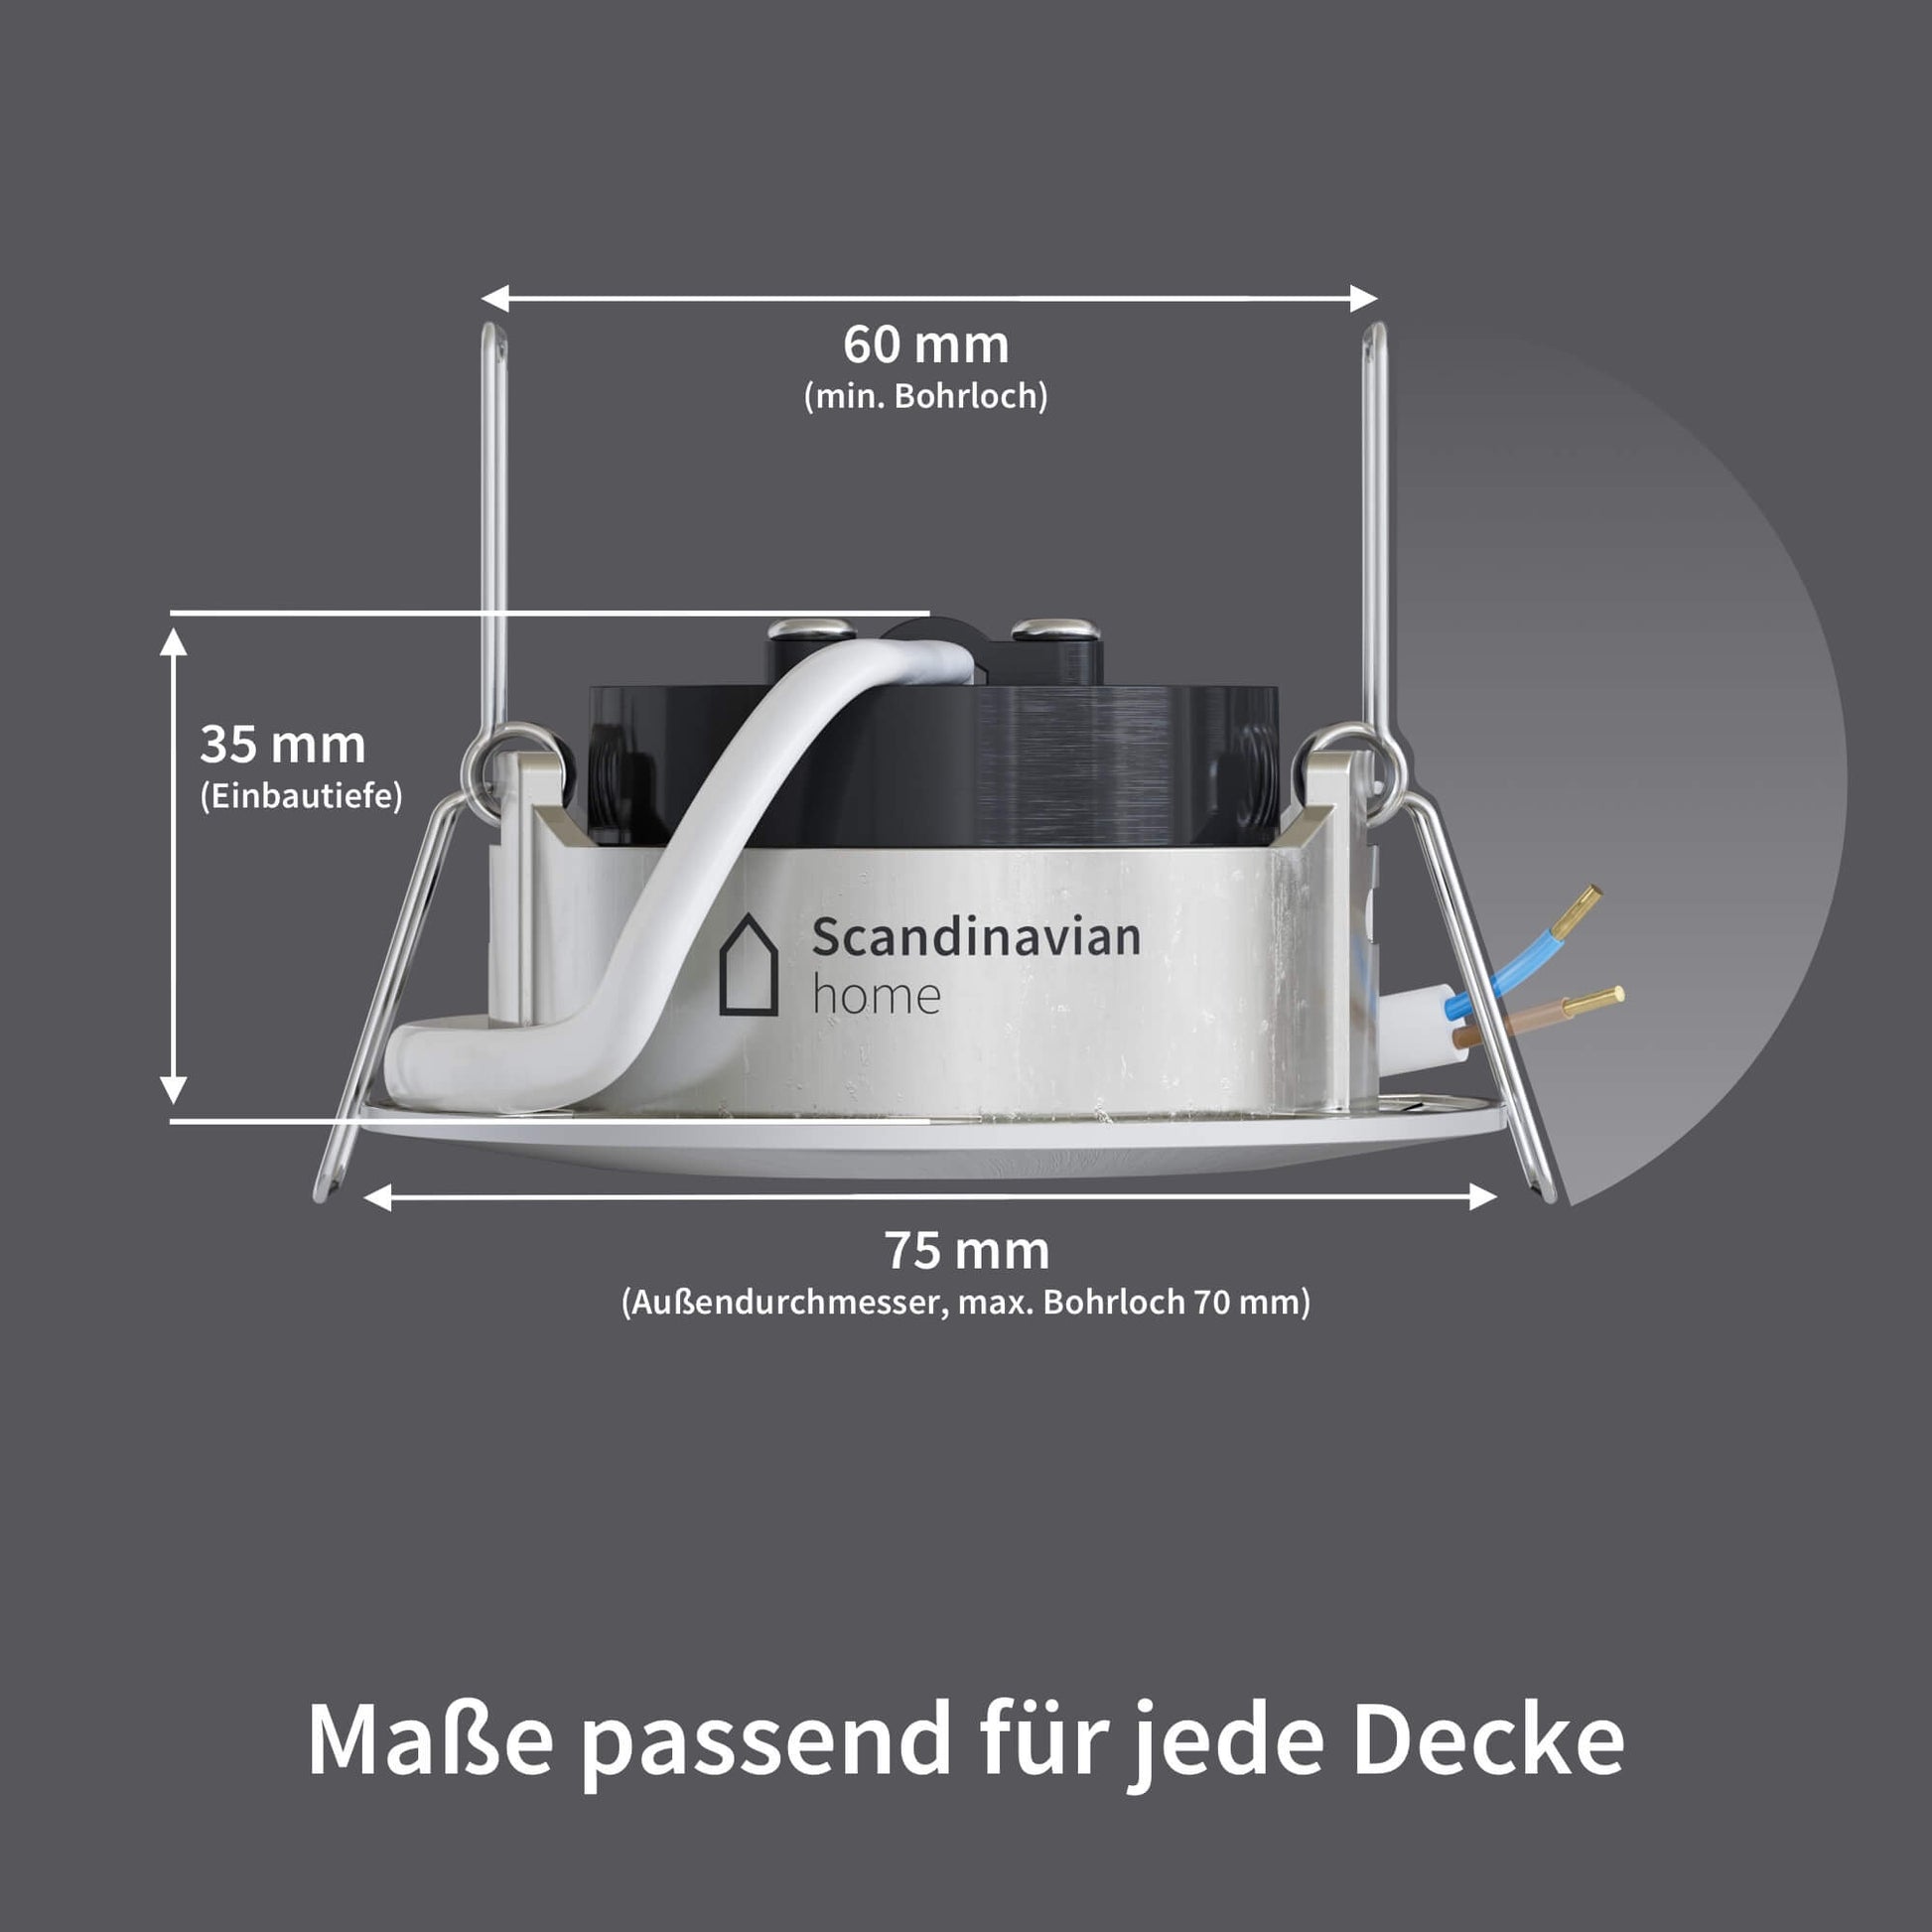 home Scandinavian I Edelstahldesign LED DN-Serie Dimmbar – Einbaustrahler (WarmDim)